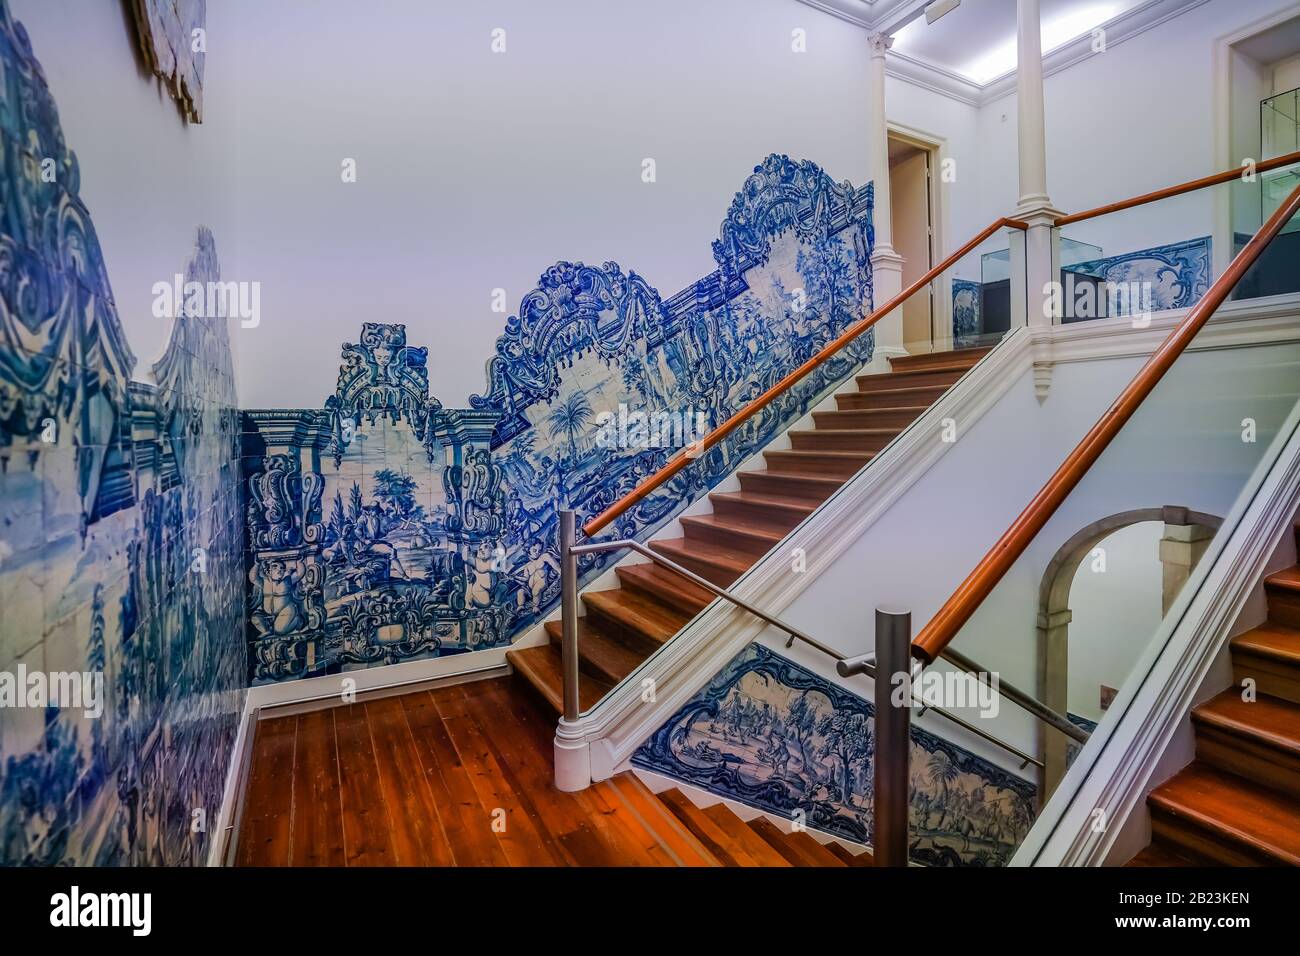 Das mit Azulejo dekorierte Treppenhaus im Museum Nacional do Azulejo (Nationales Fliesenmuseum) ist ein berühmtes Kultur- und Kunstmuseum in Lissabon Portugal Stockfoto